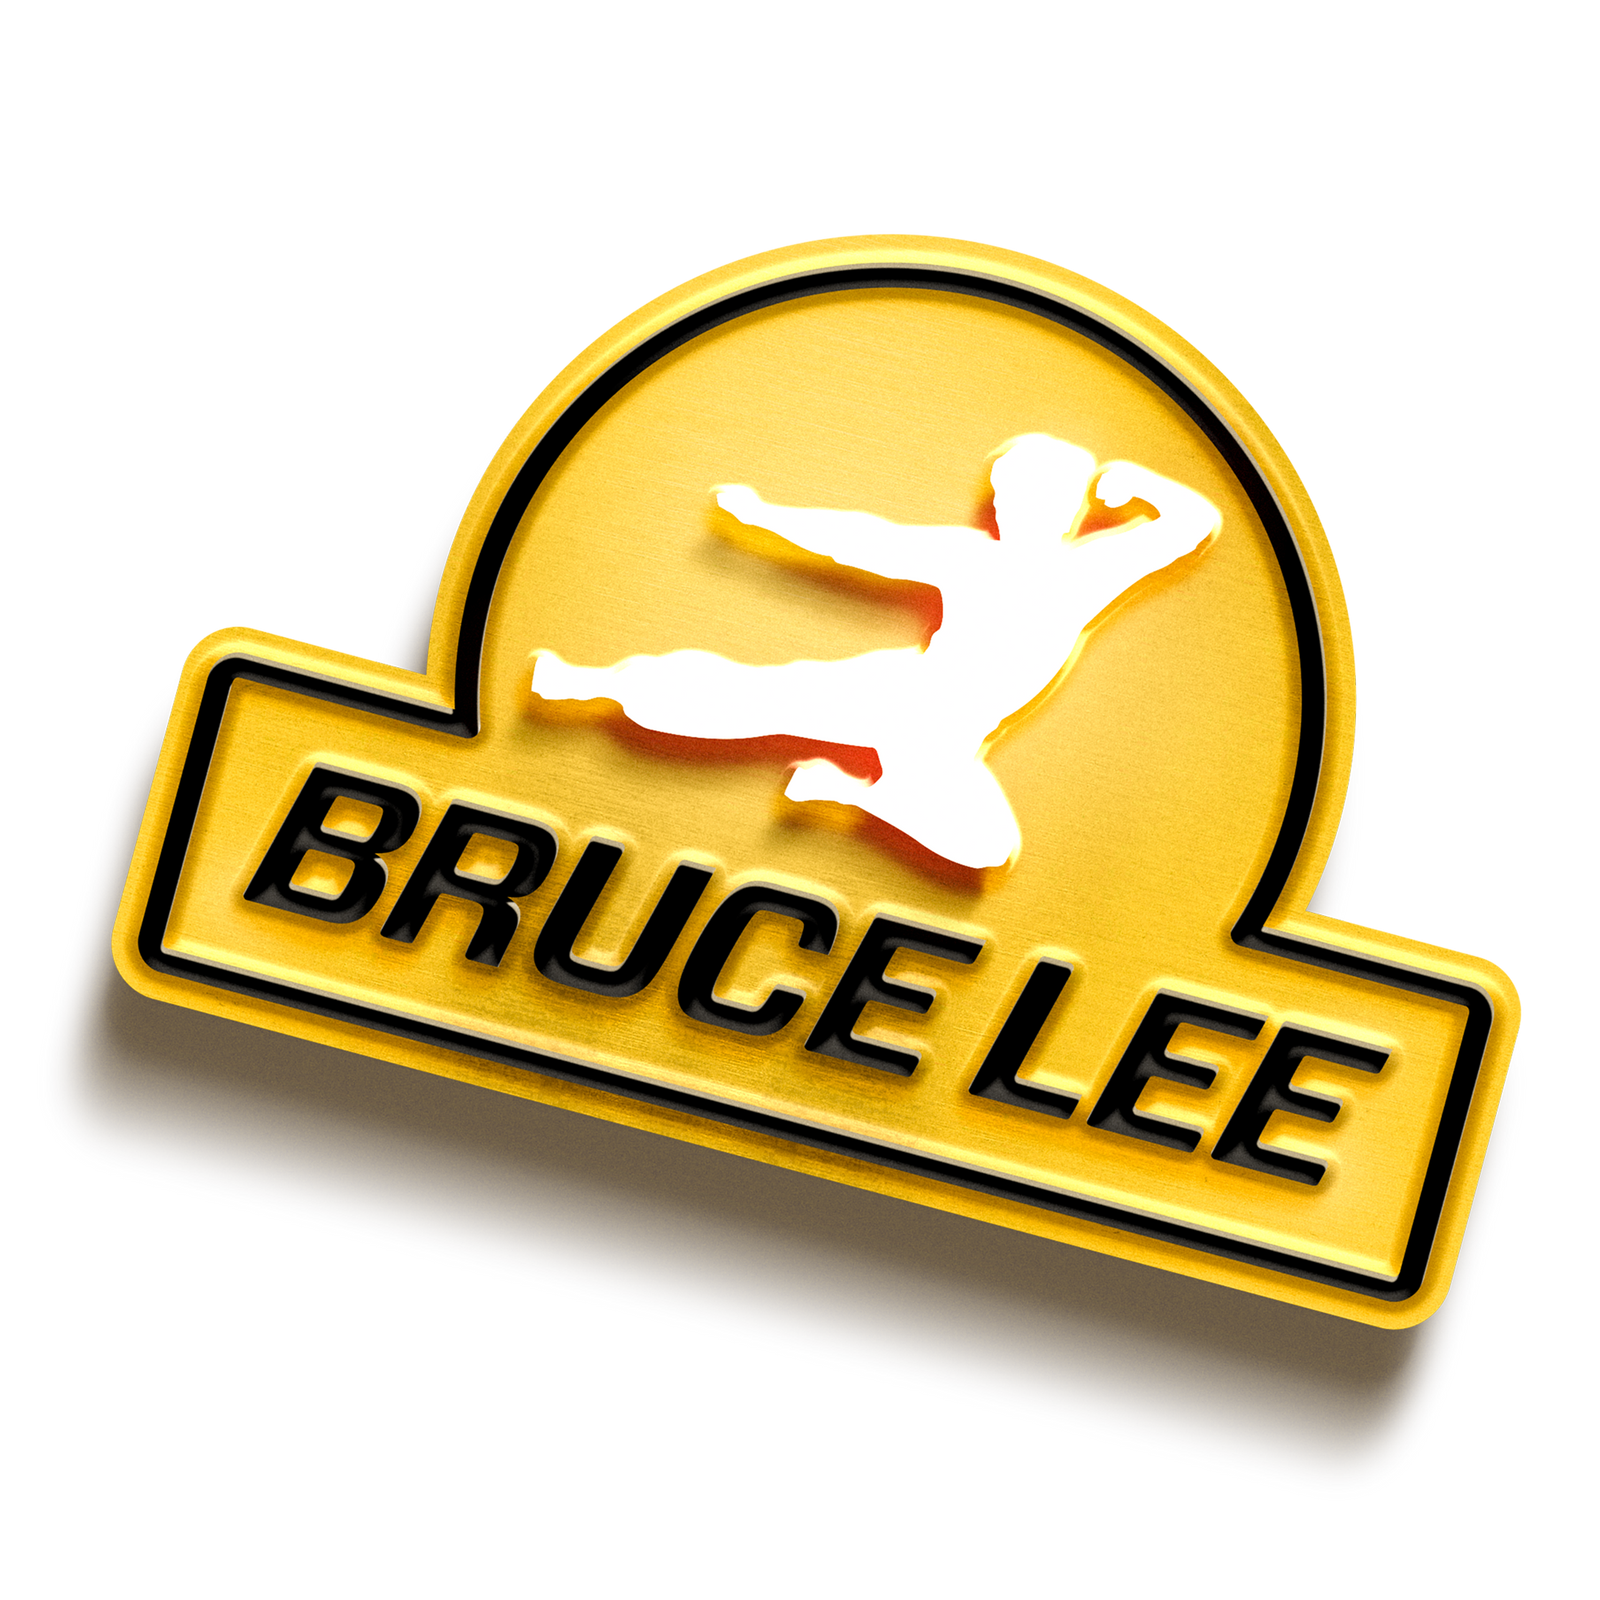 Bruce Lee logo.